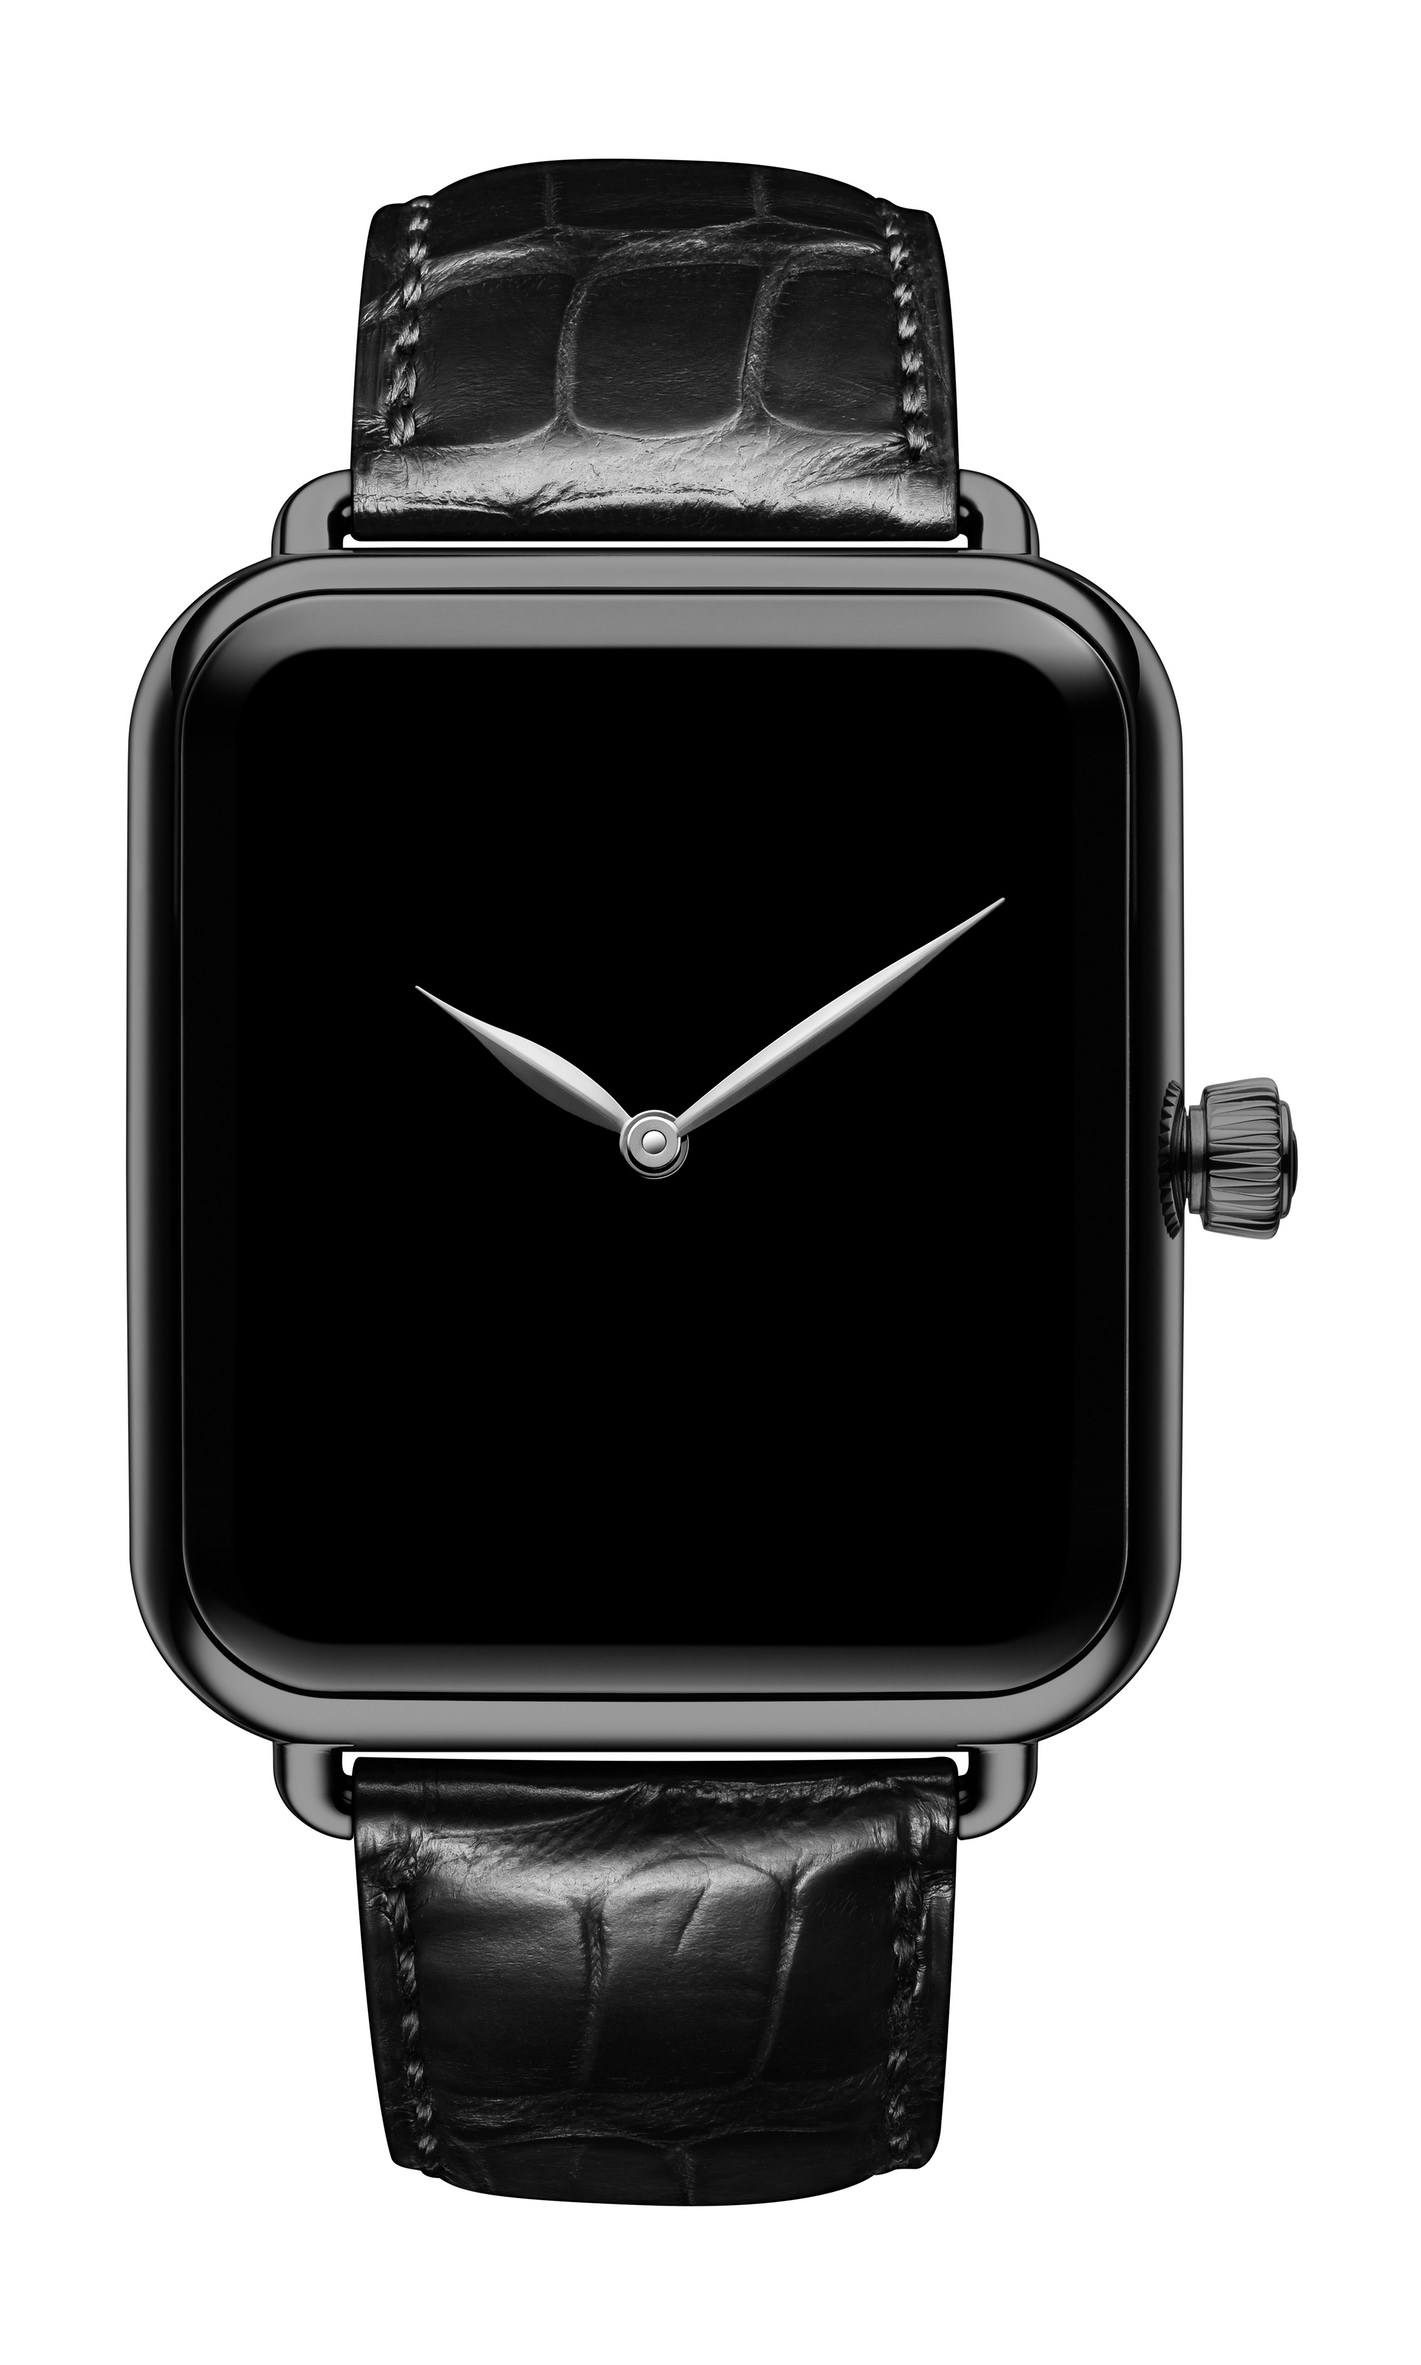 شركة أبل تطلق نسخة جديدة من Apple Watch تستهدف الرياضيين 2022